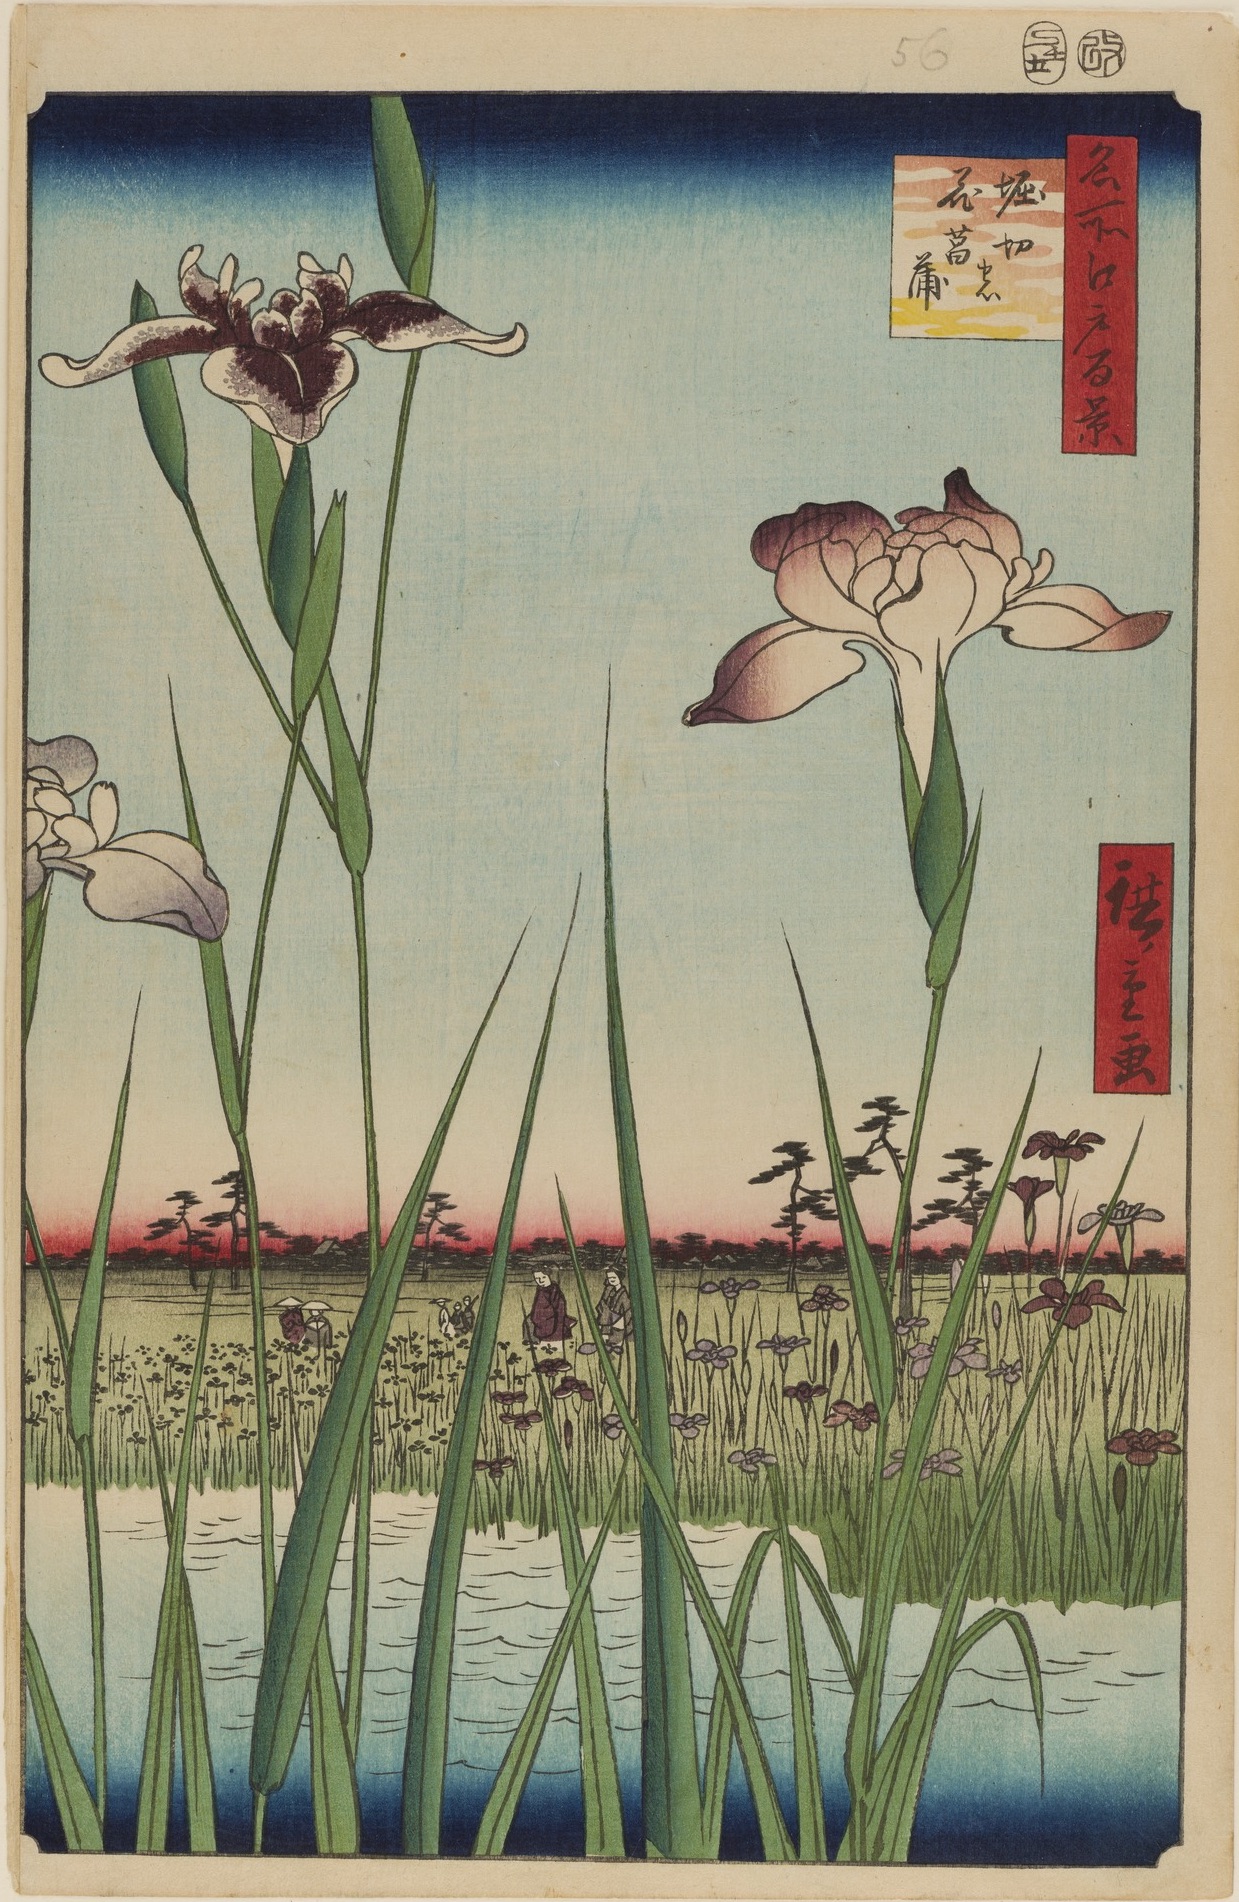 حديقة سوسن هوريكيرى by  Hiroshige - 1856 - الأبعاد: 34x22.9 سم 